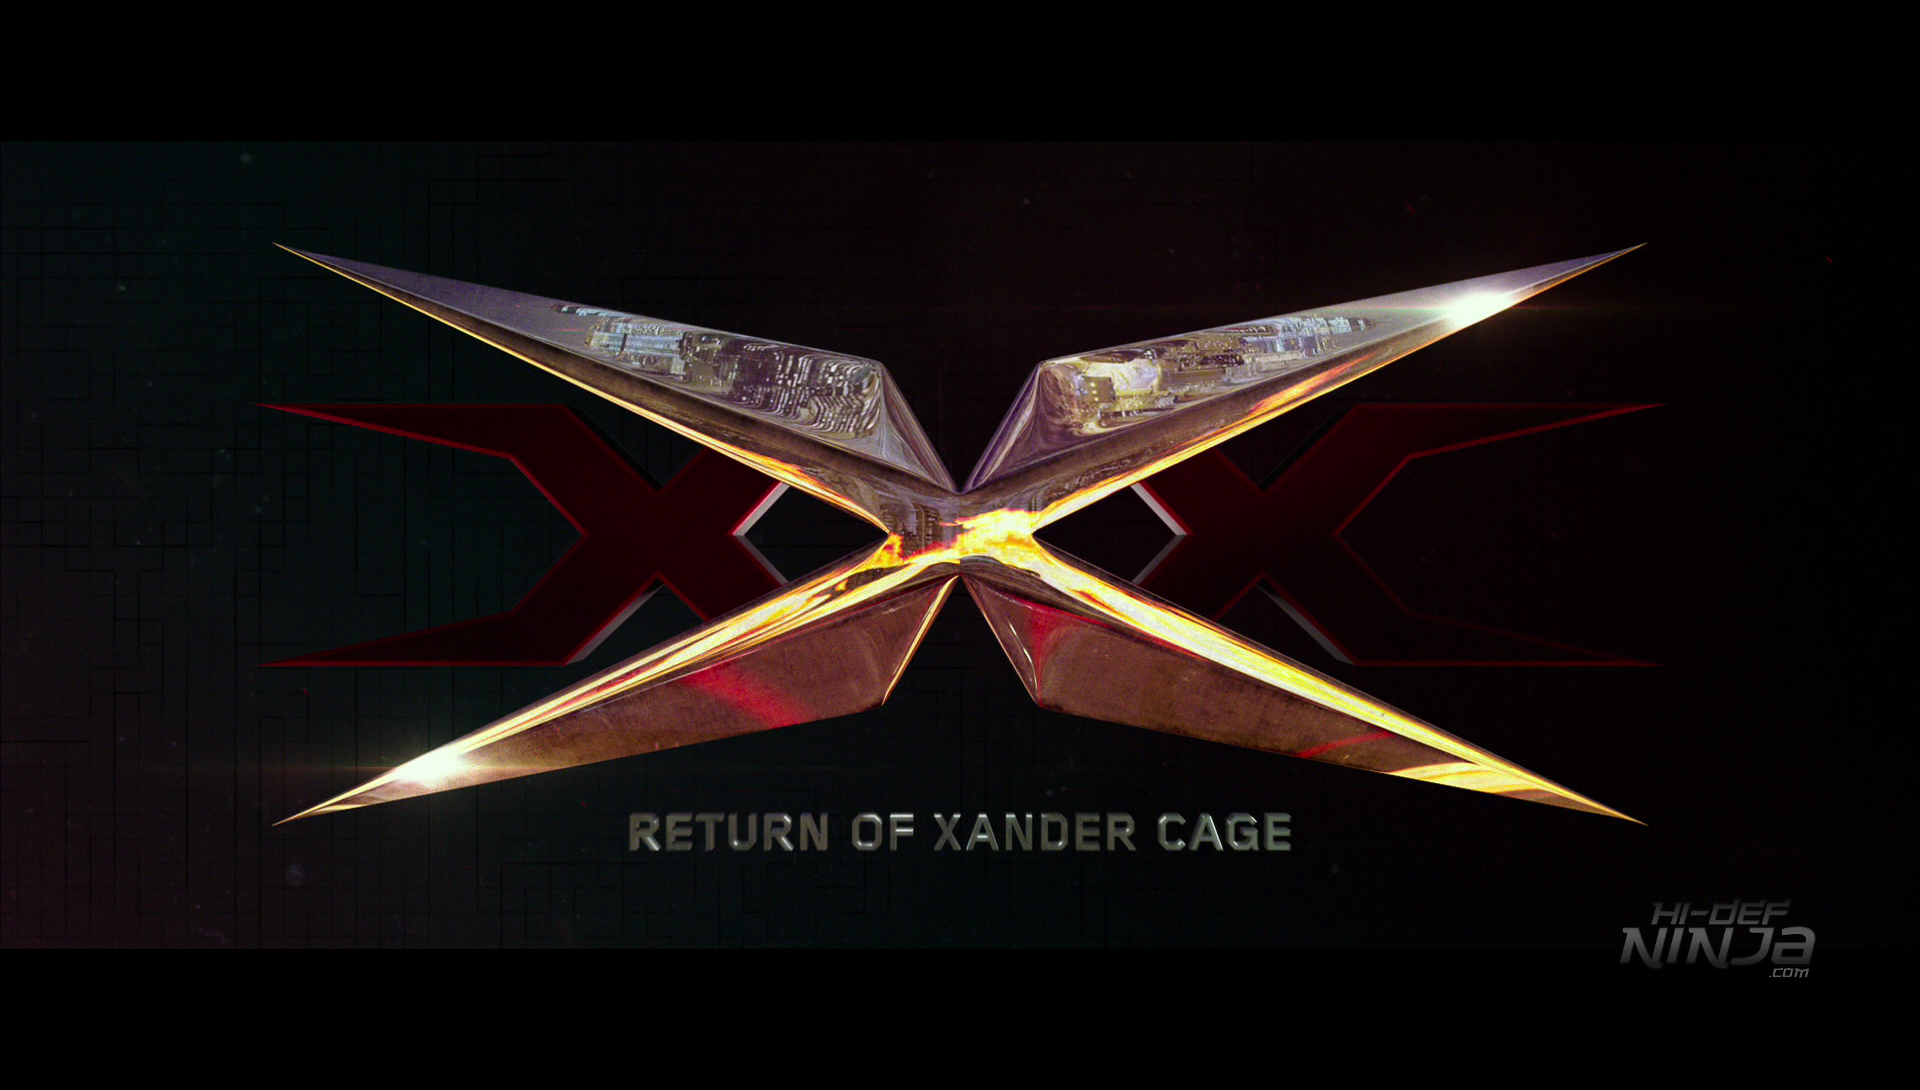 Xxx Return Of Xander Cage 4kblu Ray Review Hi Def Ninja Blu Ray Steelbooks Pop Culture 